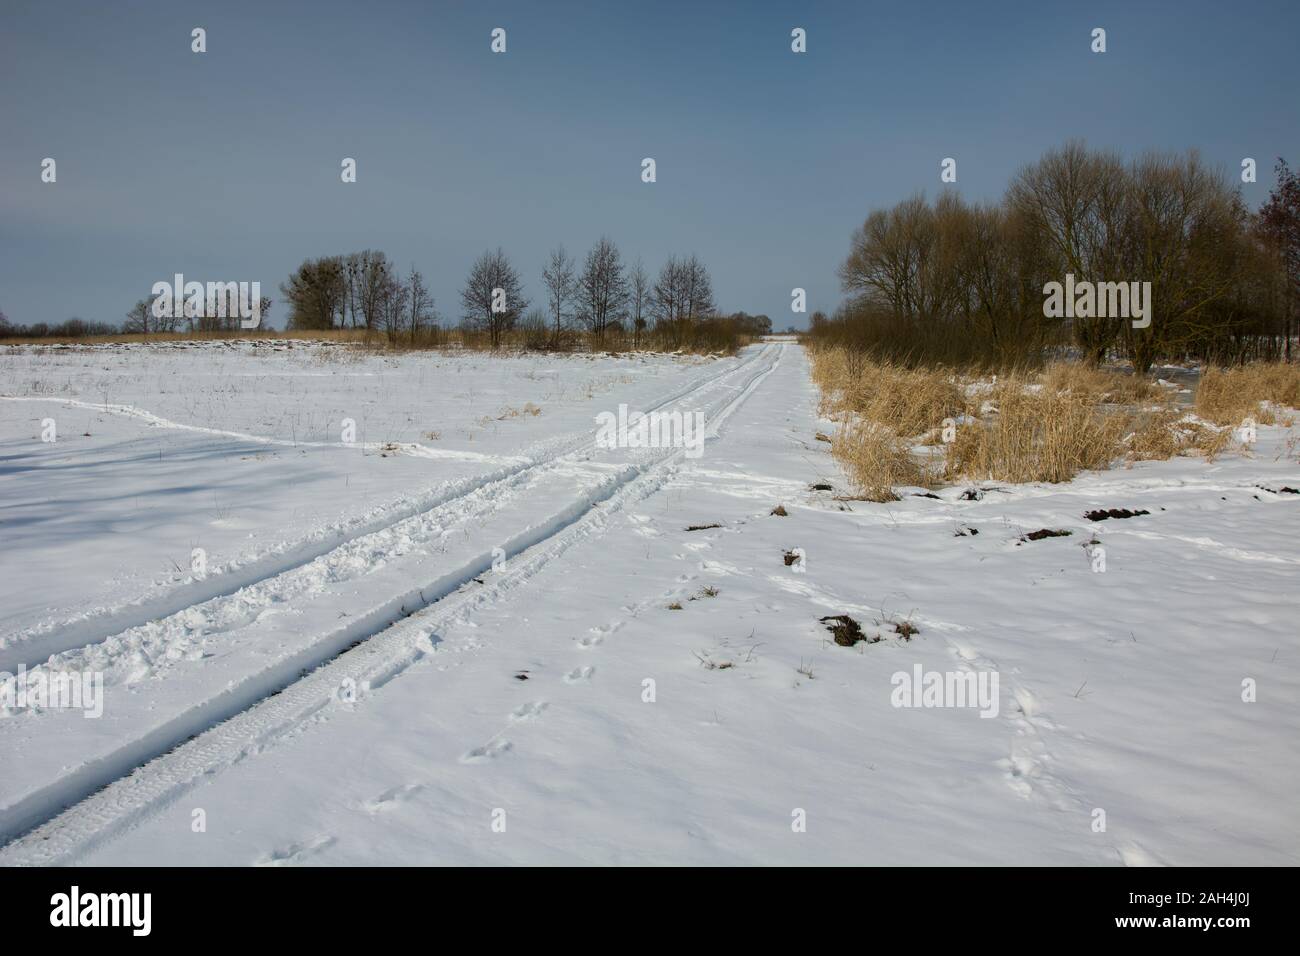 Route de campagne couverte de neige et les buissons, vue d'hiver Banque D'Images